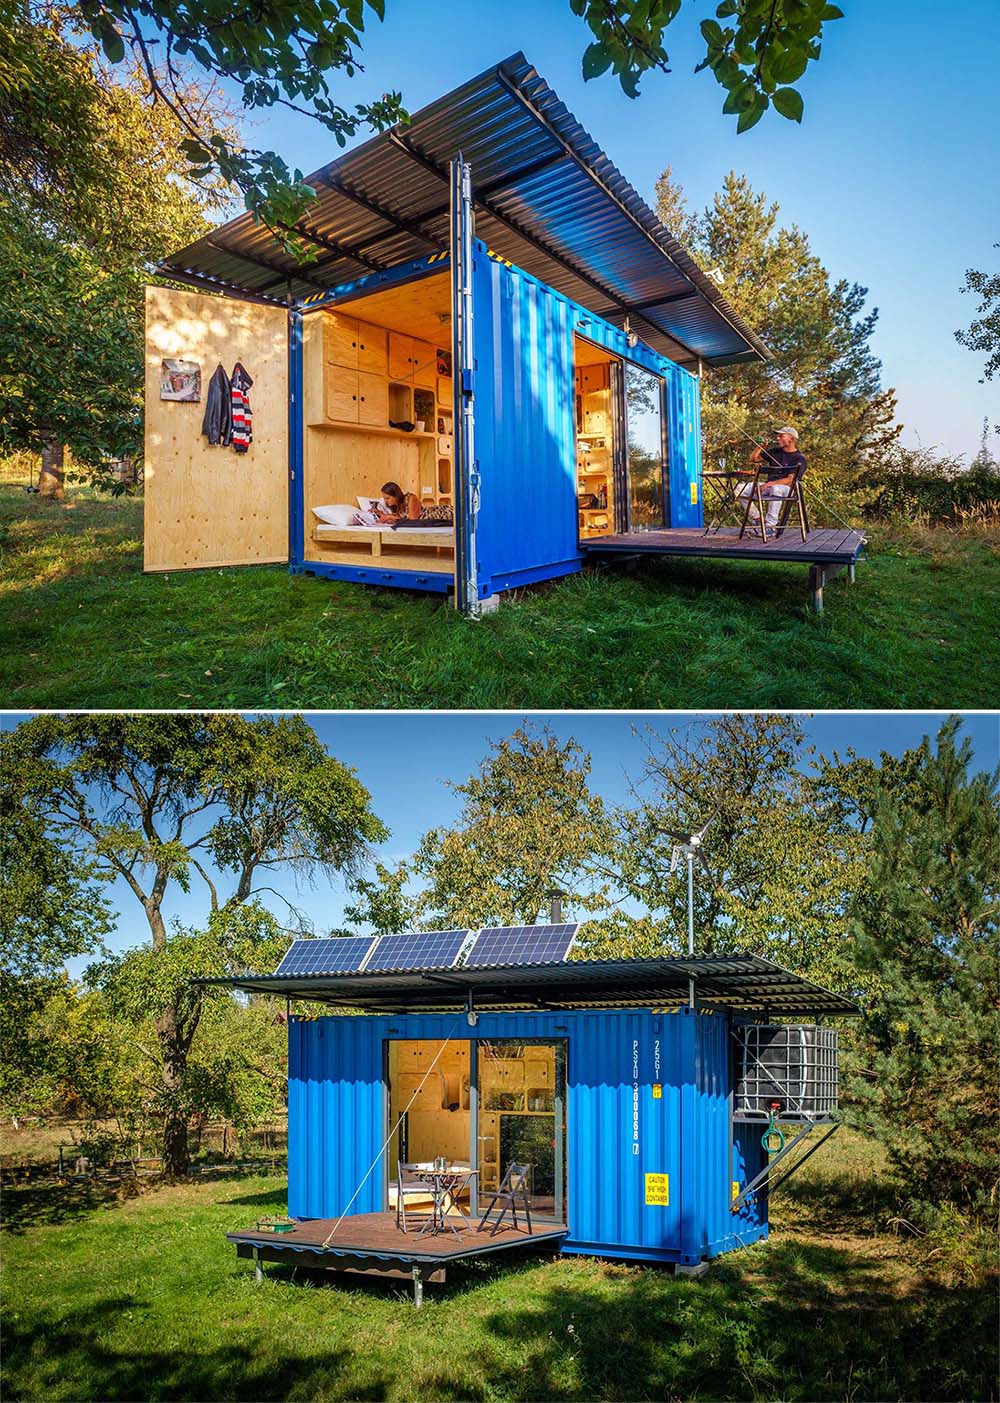 Автономный крошечный дом, сделанный из небольшого транспортного контейнера, который включает в себя раскладную кровать, солнечные батареи, небольшую кухню и ванную комнату.